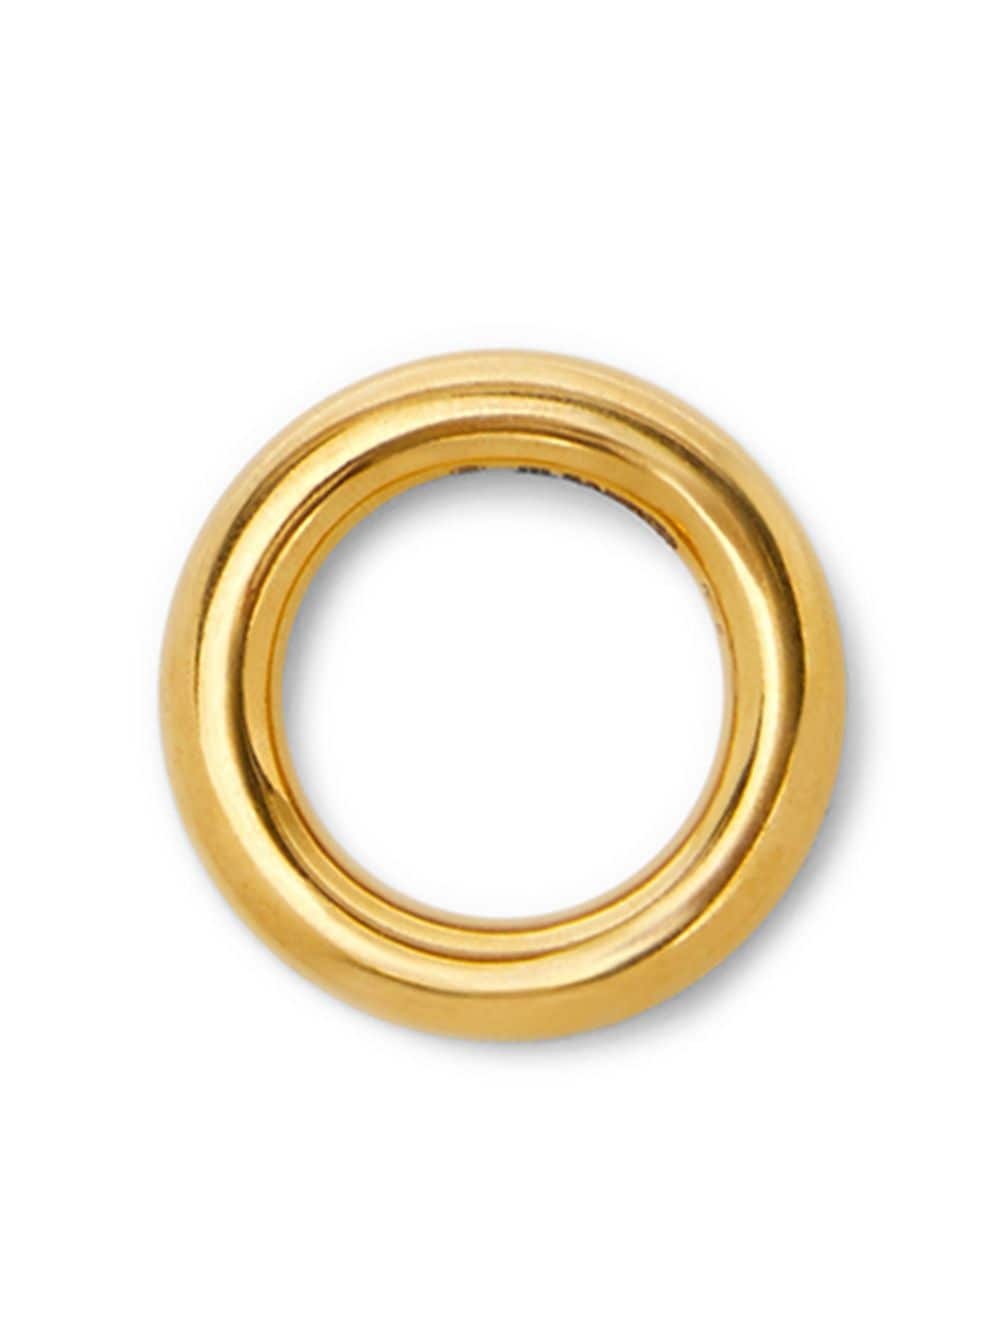 engraved-logo circular-design ring - 2